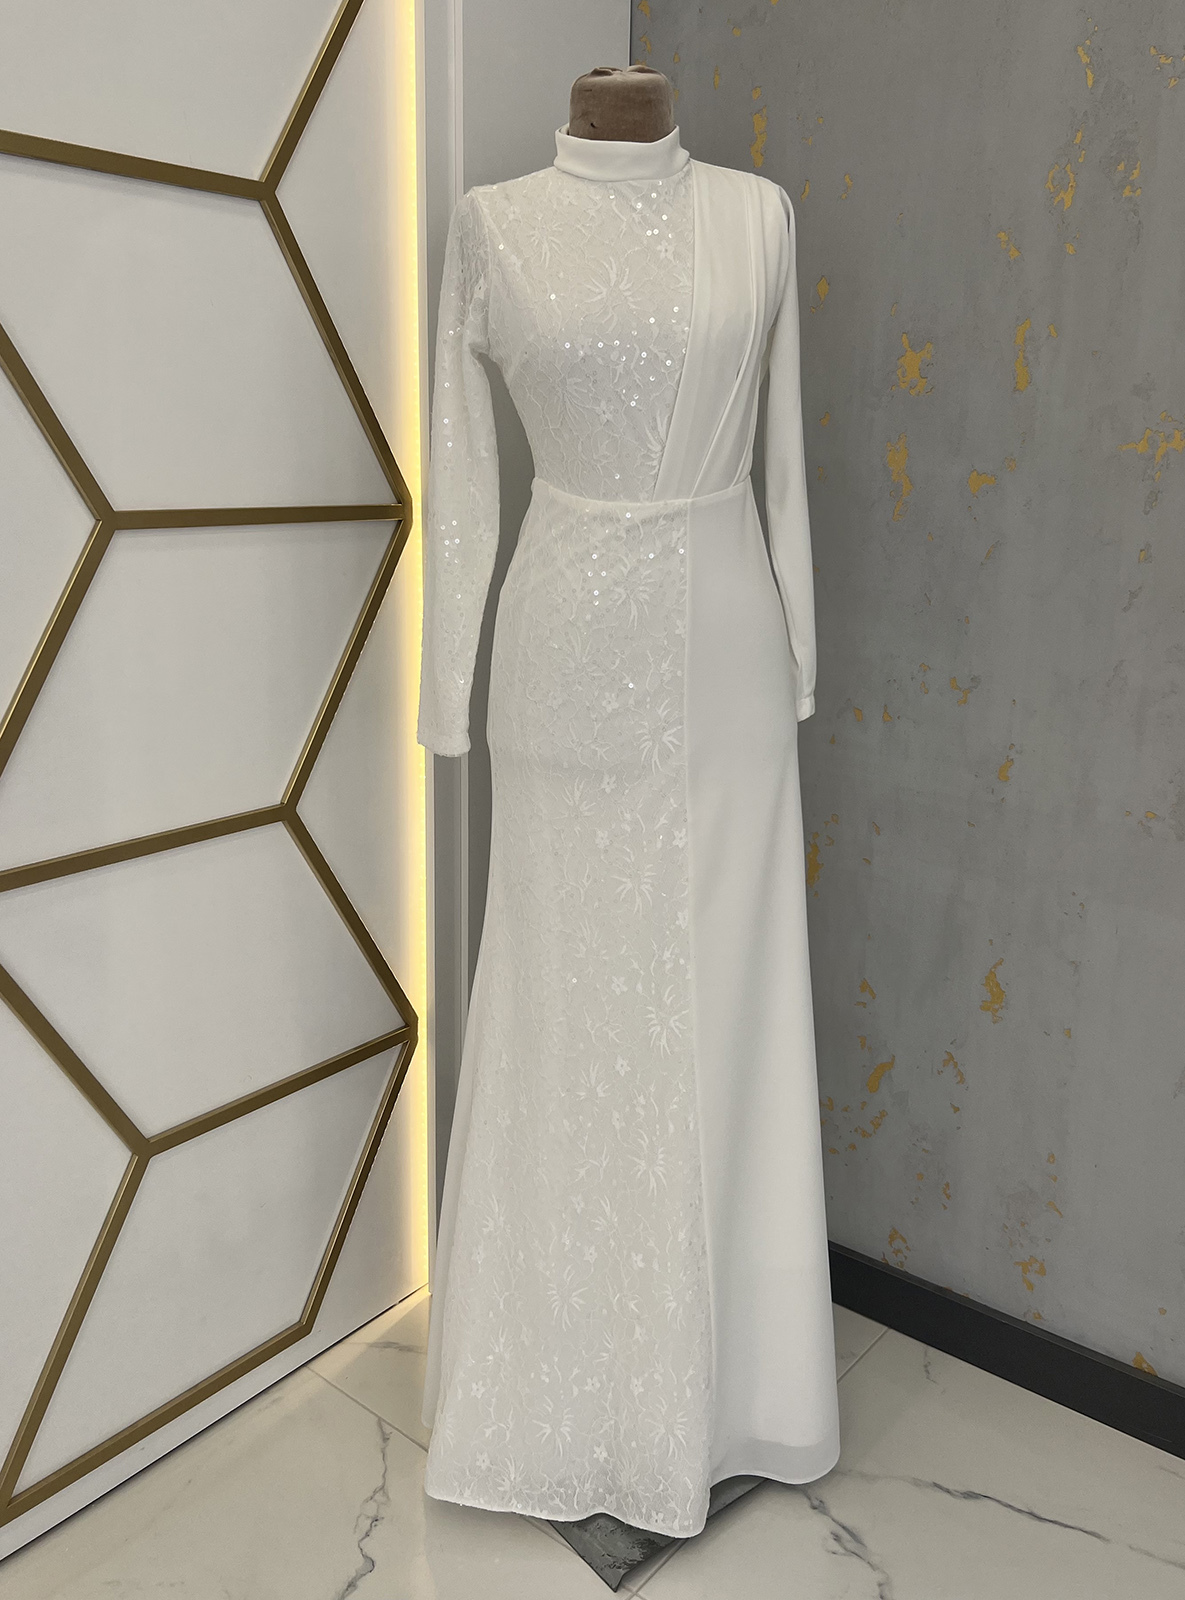 Ecru - Fully Lined - Crew neck - Modest Evening Dress